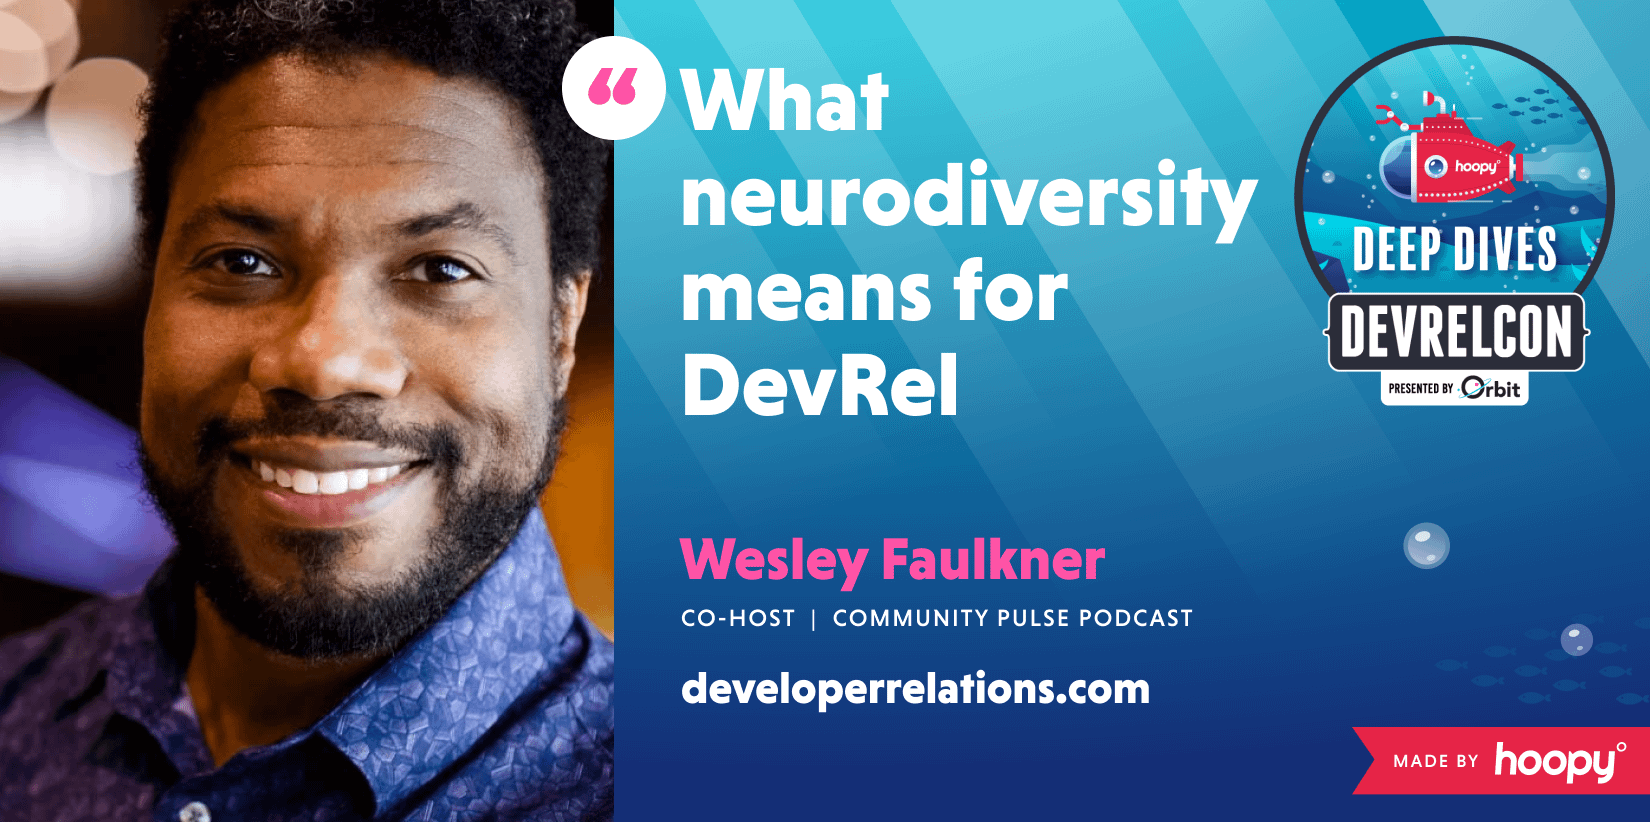 What neurodiversity means for DevRel